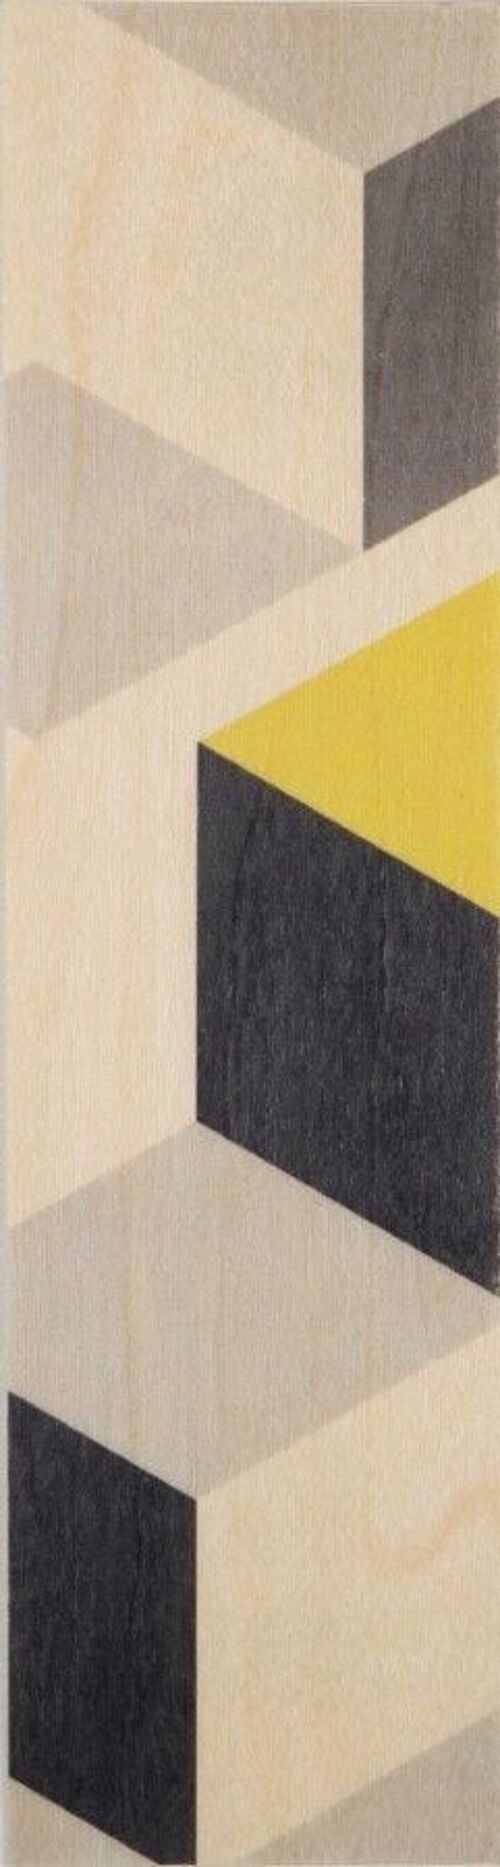 Marque-pages en bois - cubisme grey black yellow big